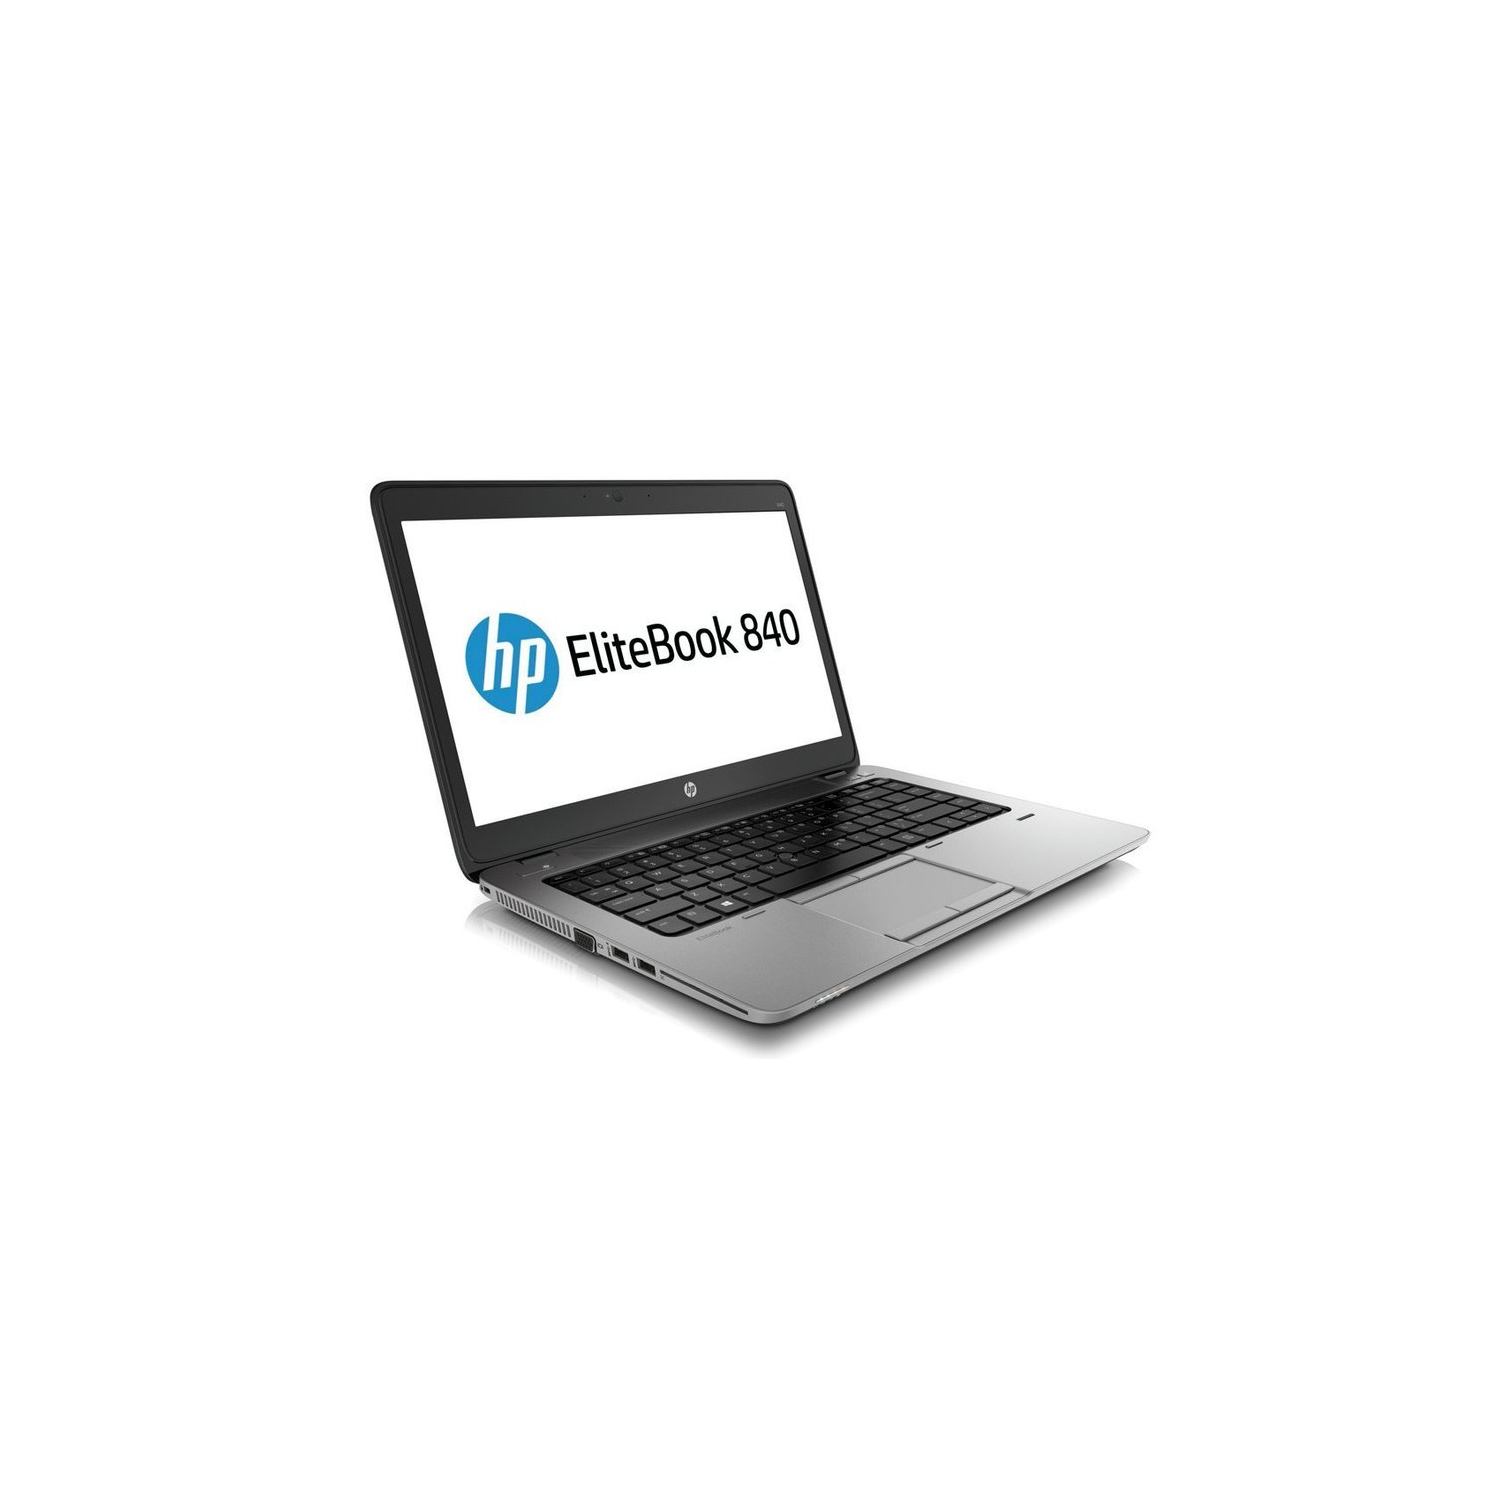 Refurbished (Excellent) - HP EliteBook 840 G1 Ultrabook i5 4300u 8G 120G SSD Win 10 Pro - Certified Refurbished